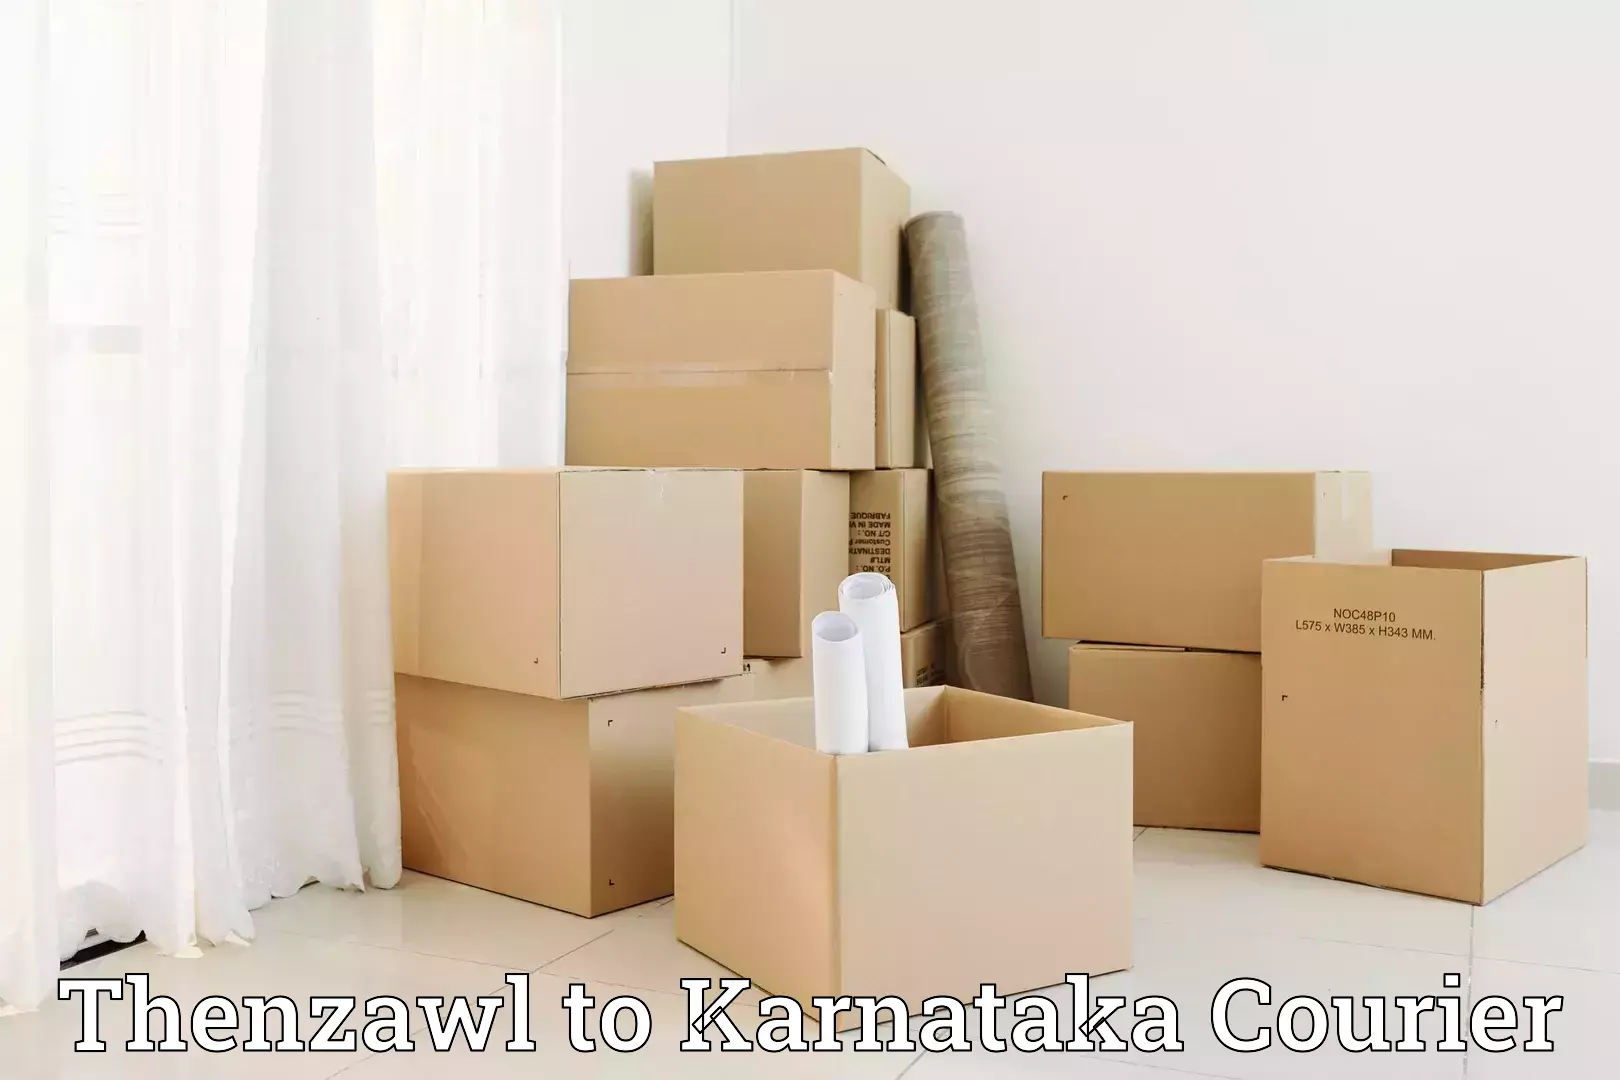 Professional packing services Thenzawl to Kuvempu University Shimoga